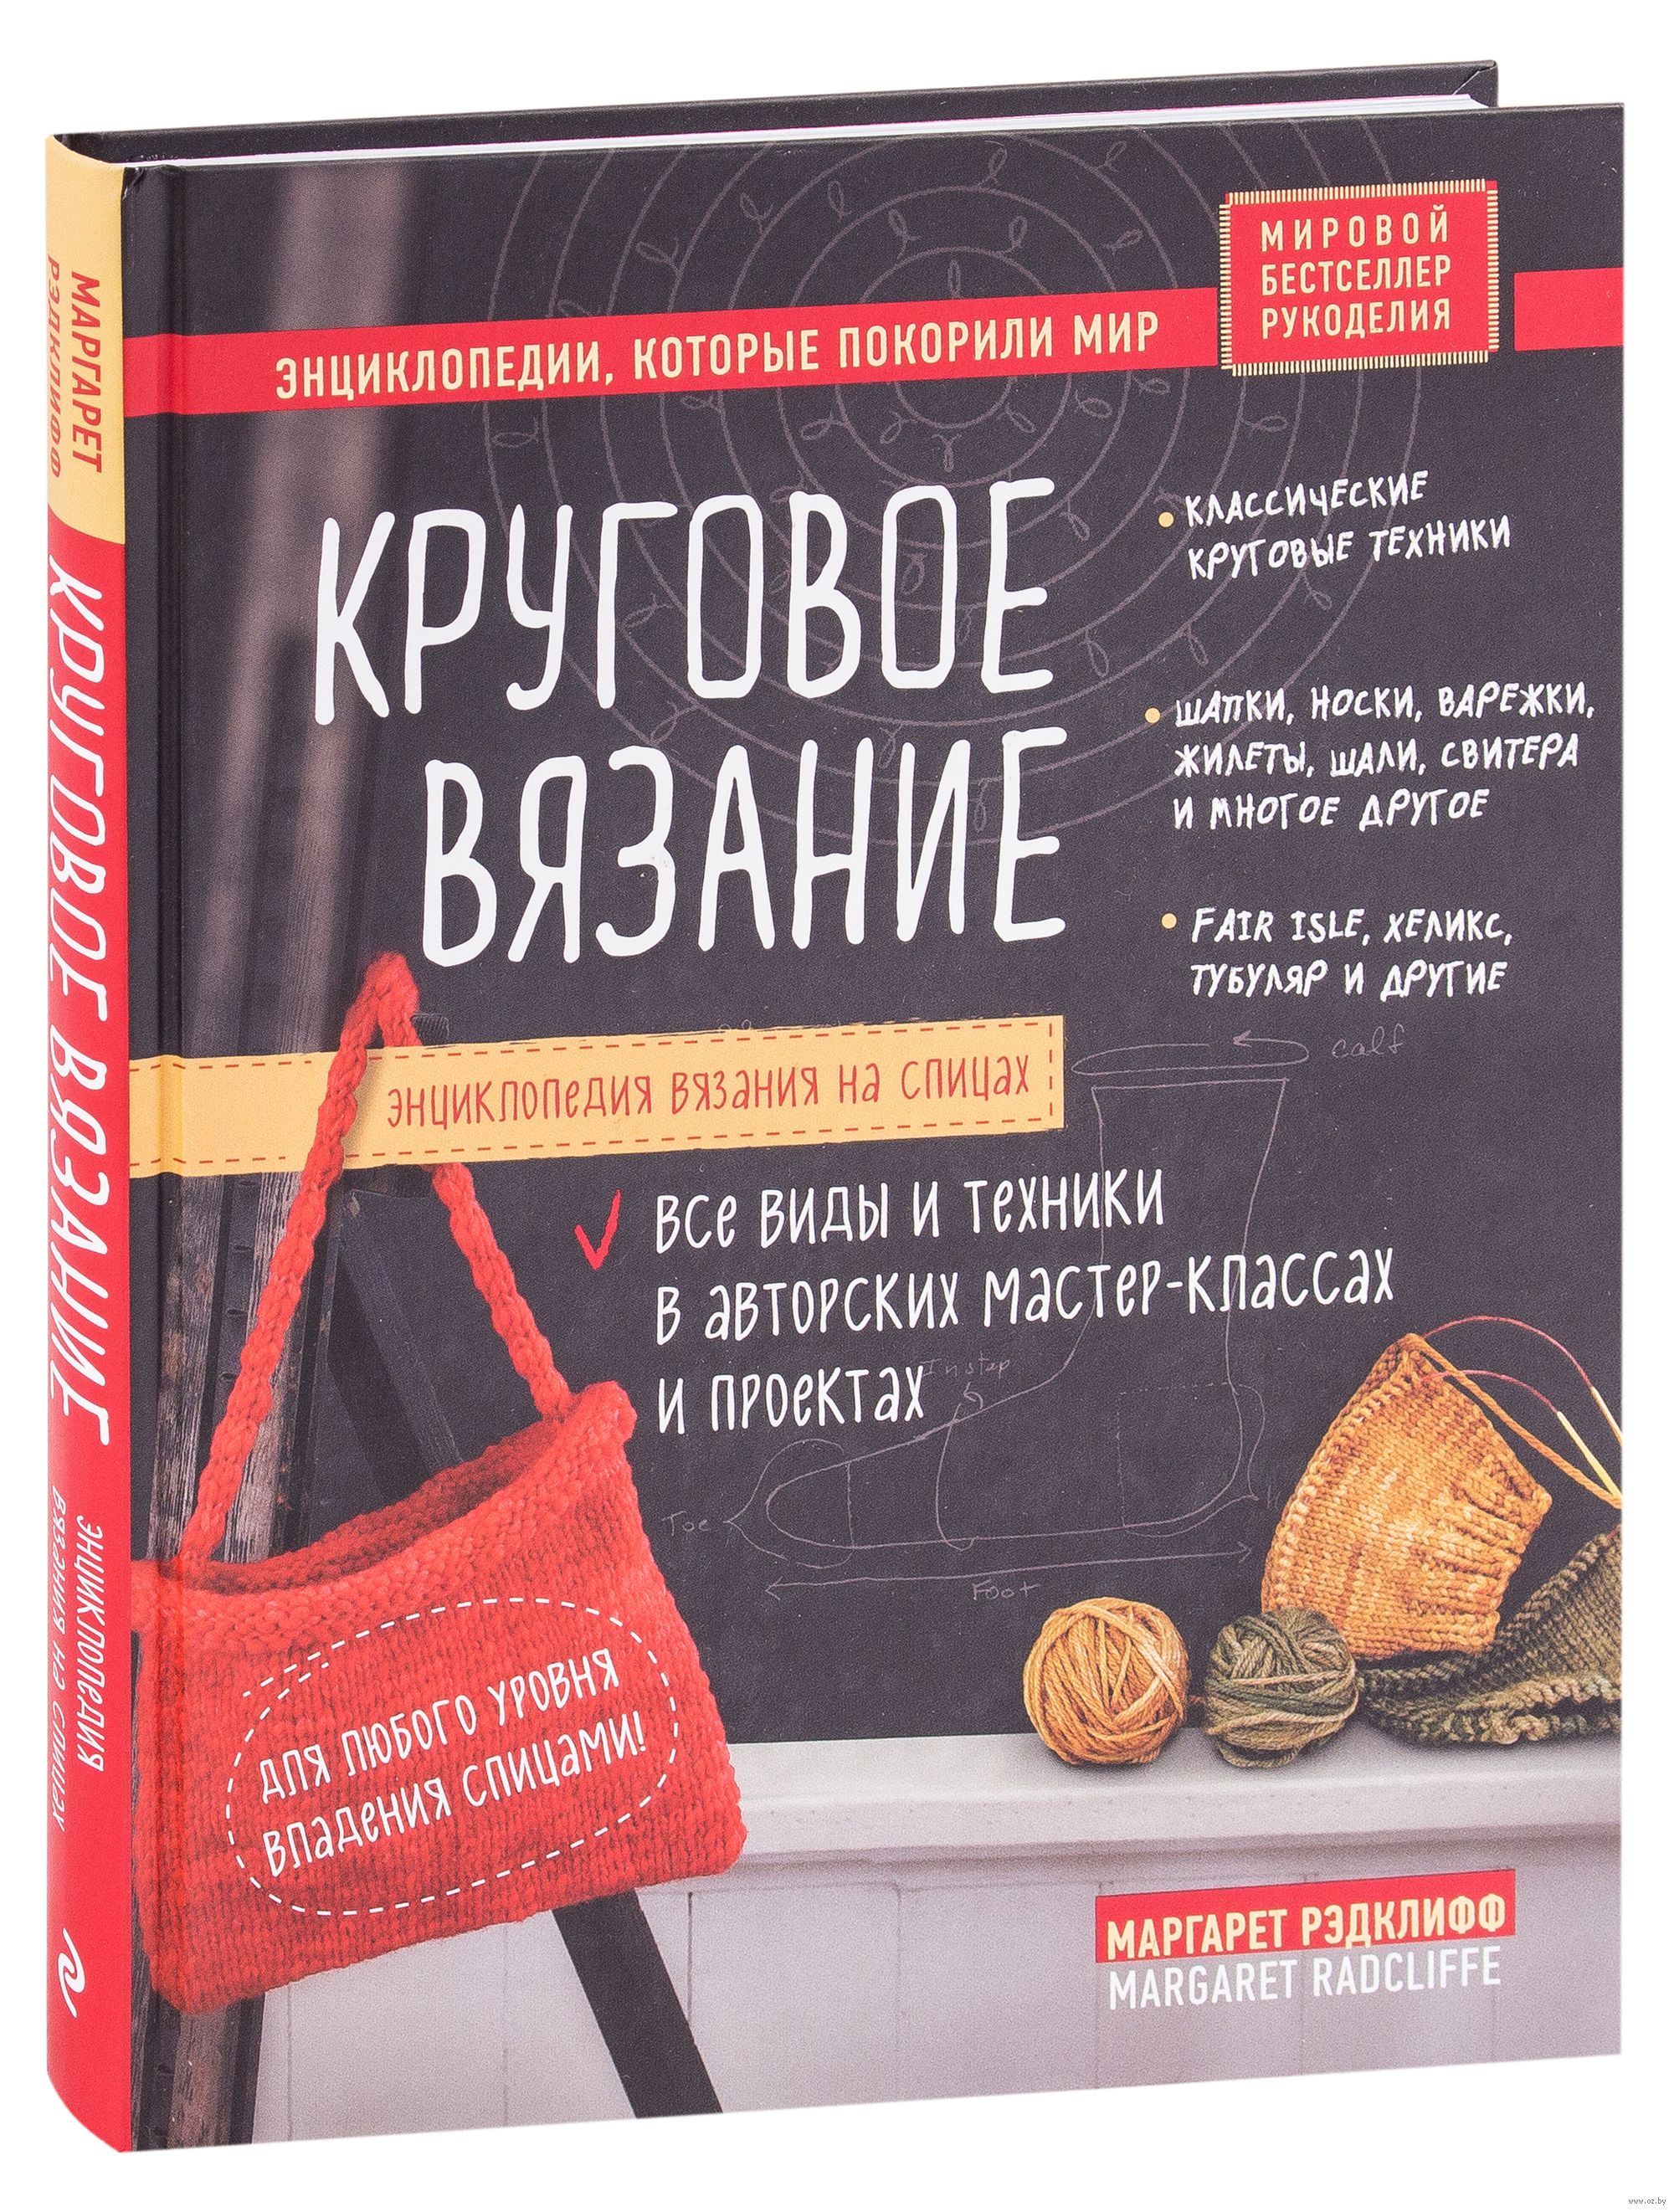 Вязание | Умелые руки | Книги на garant-artem.ru